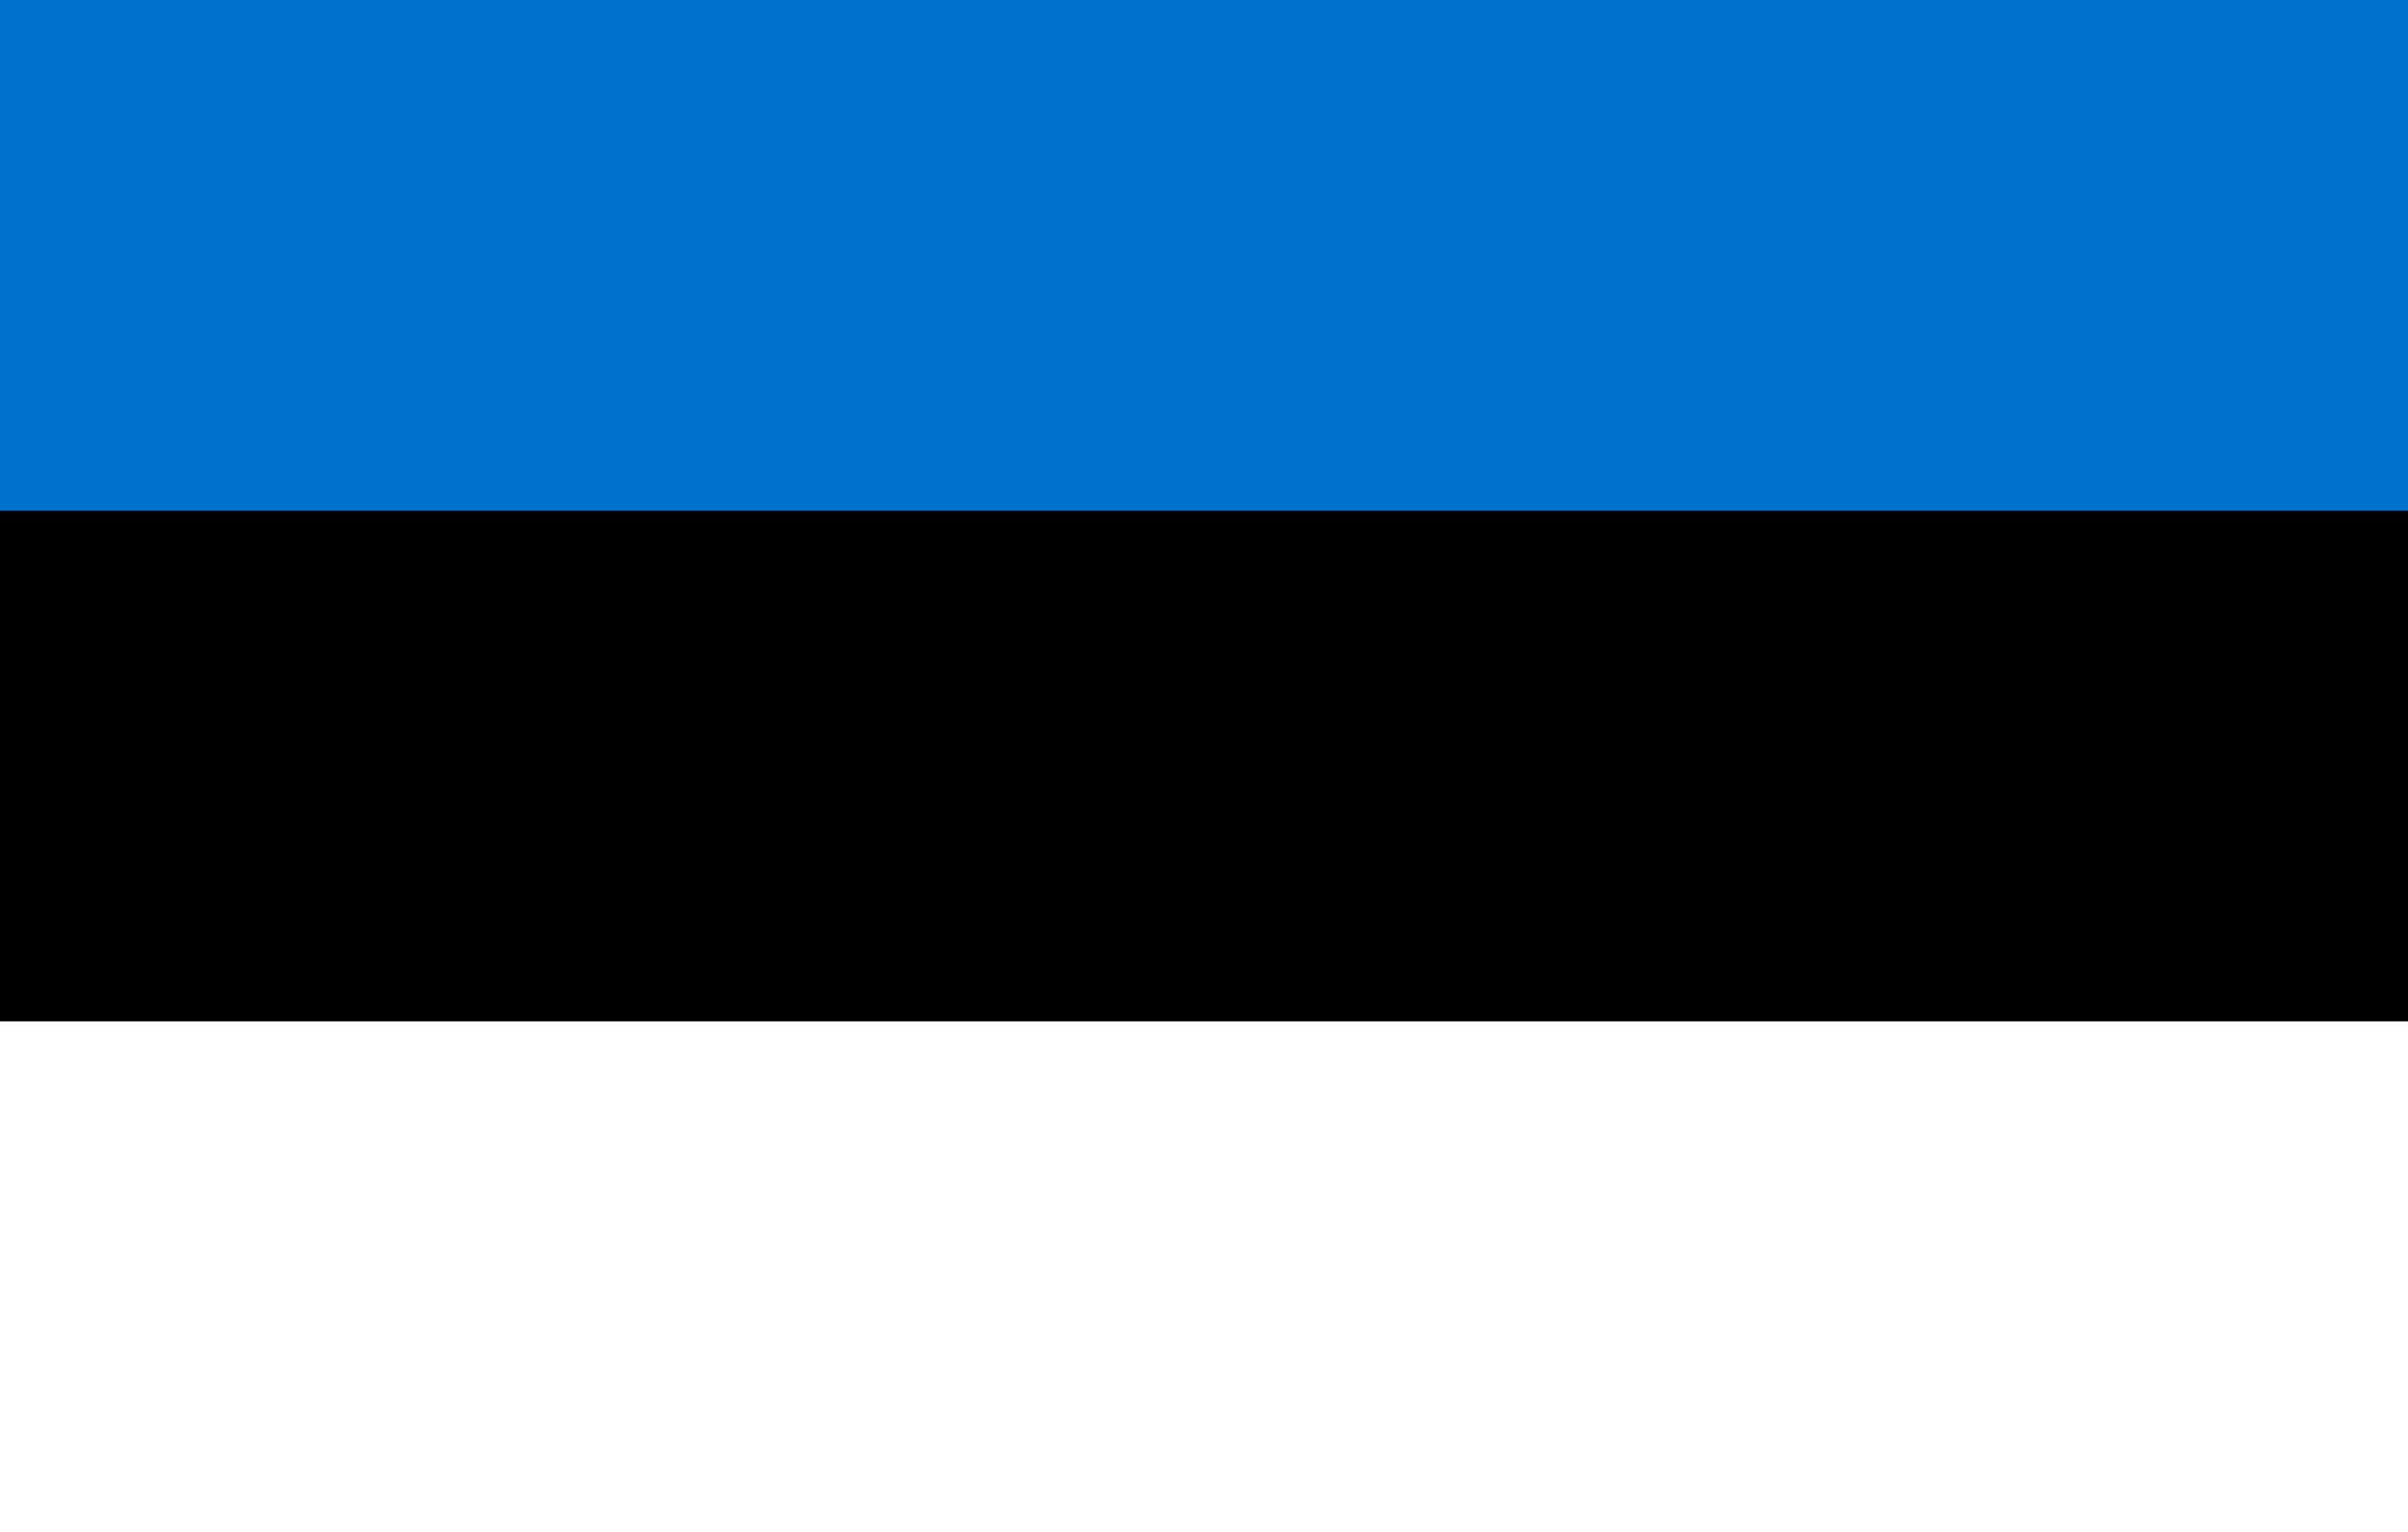 Estonia Flag Vector - Free Download